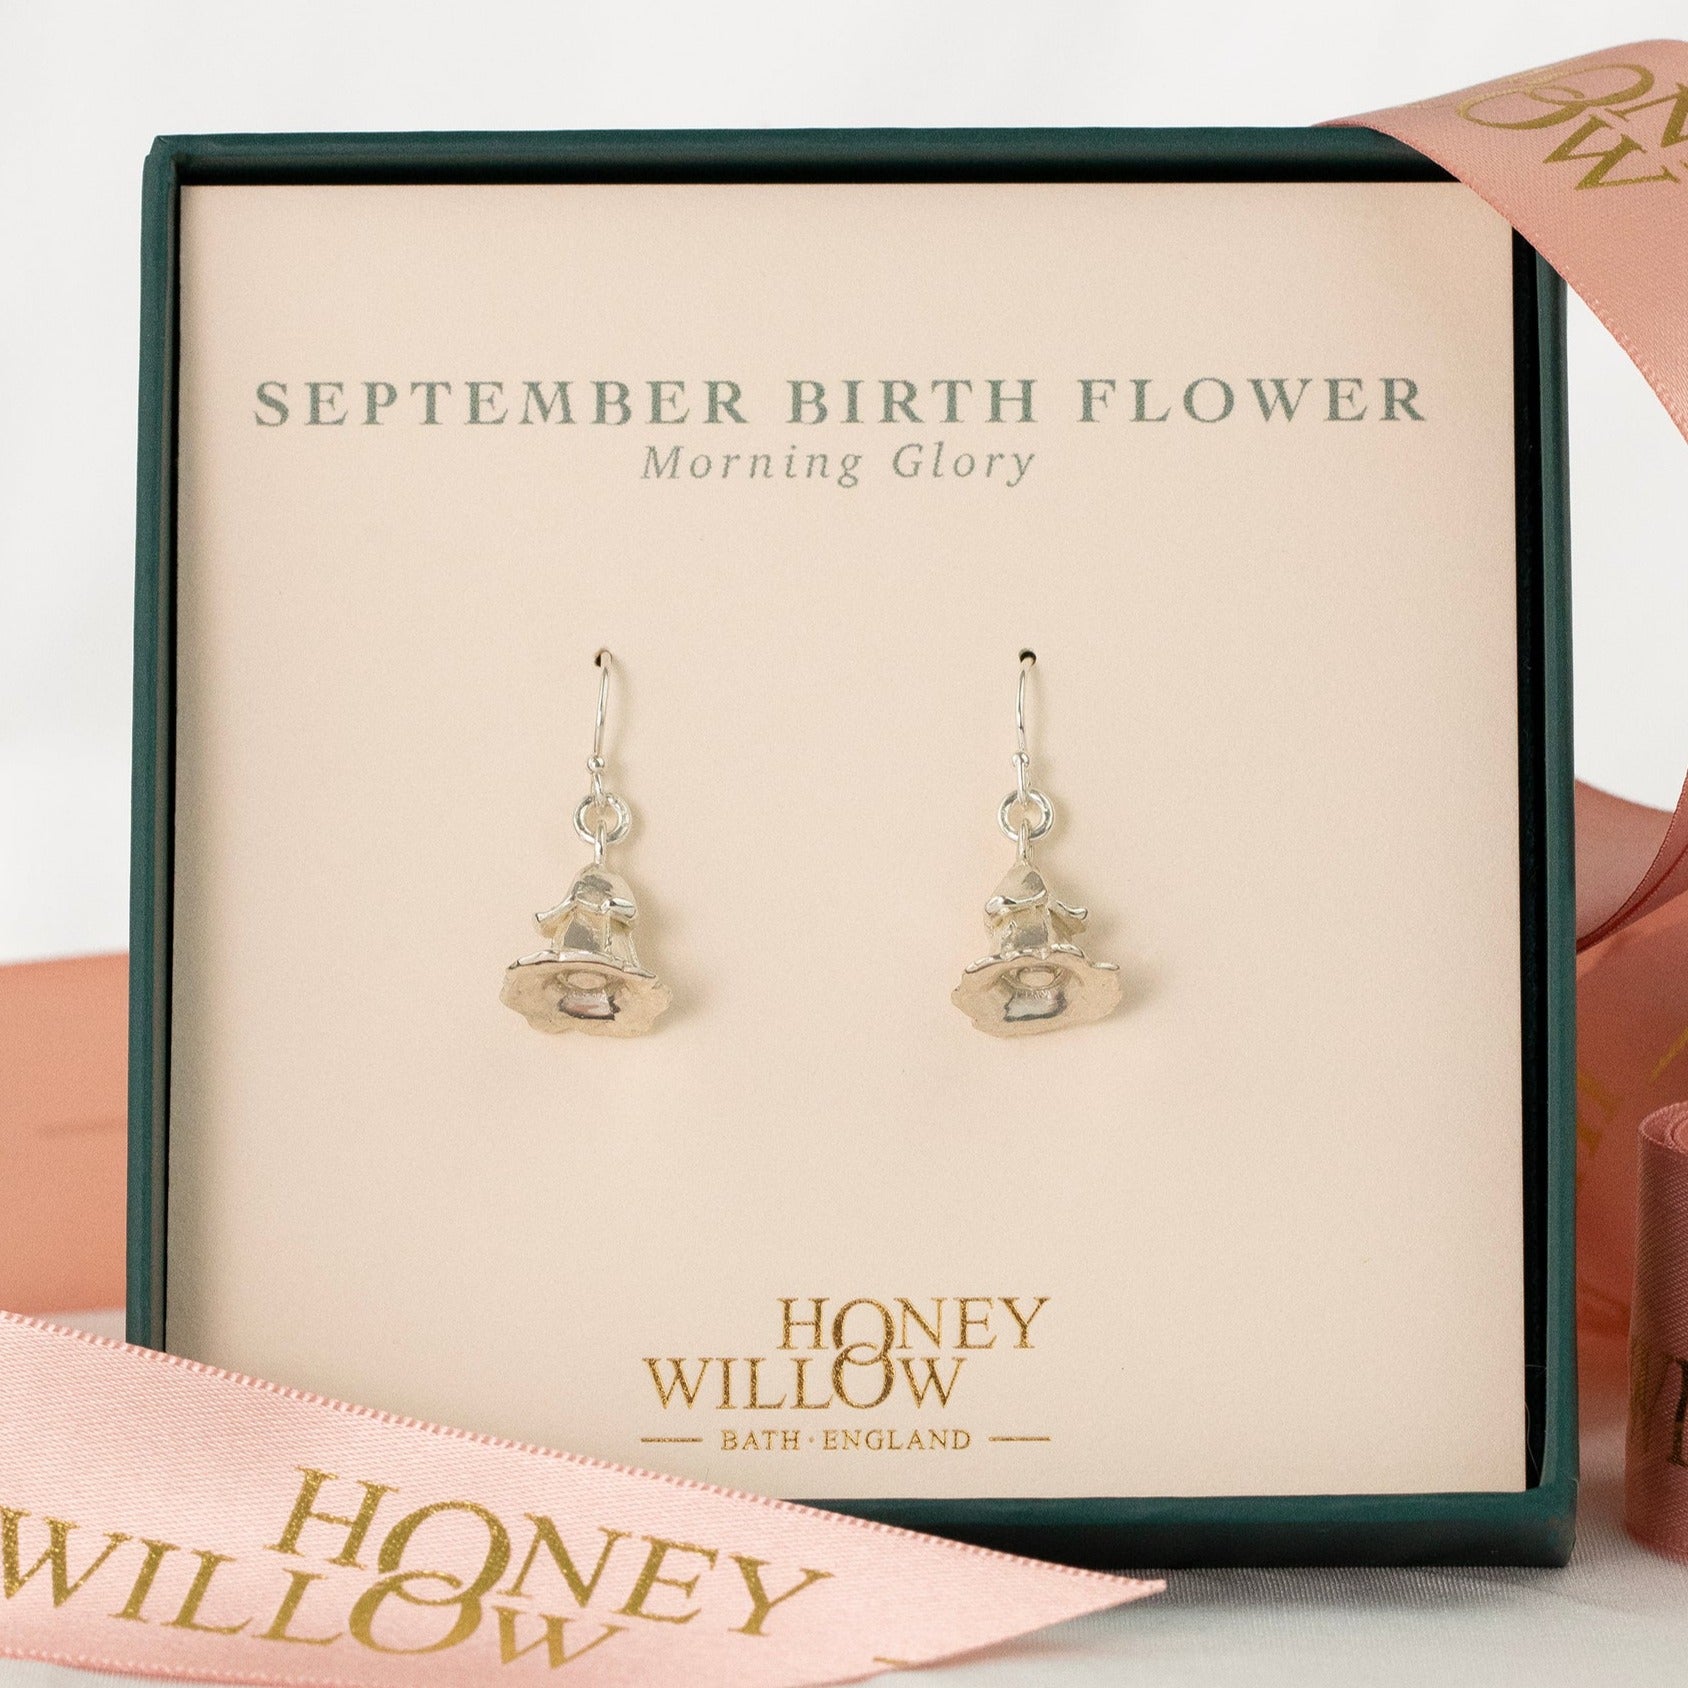 September Birth Flower Earrings - Morning Glory - Silver